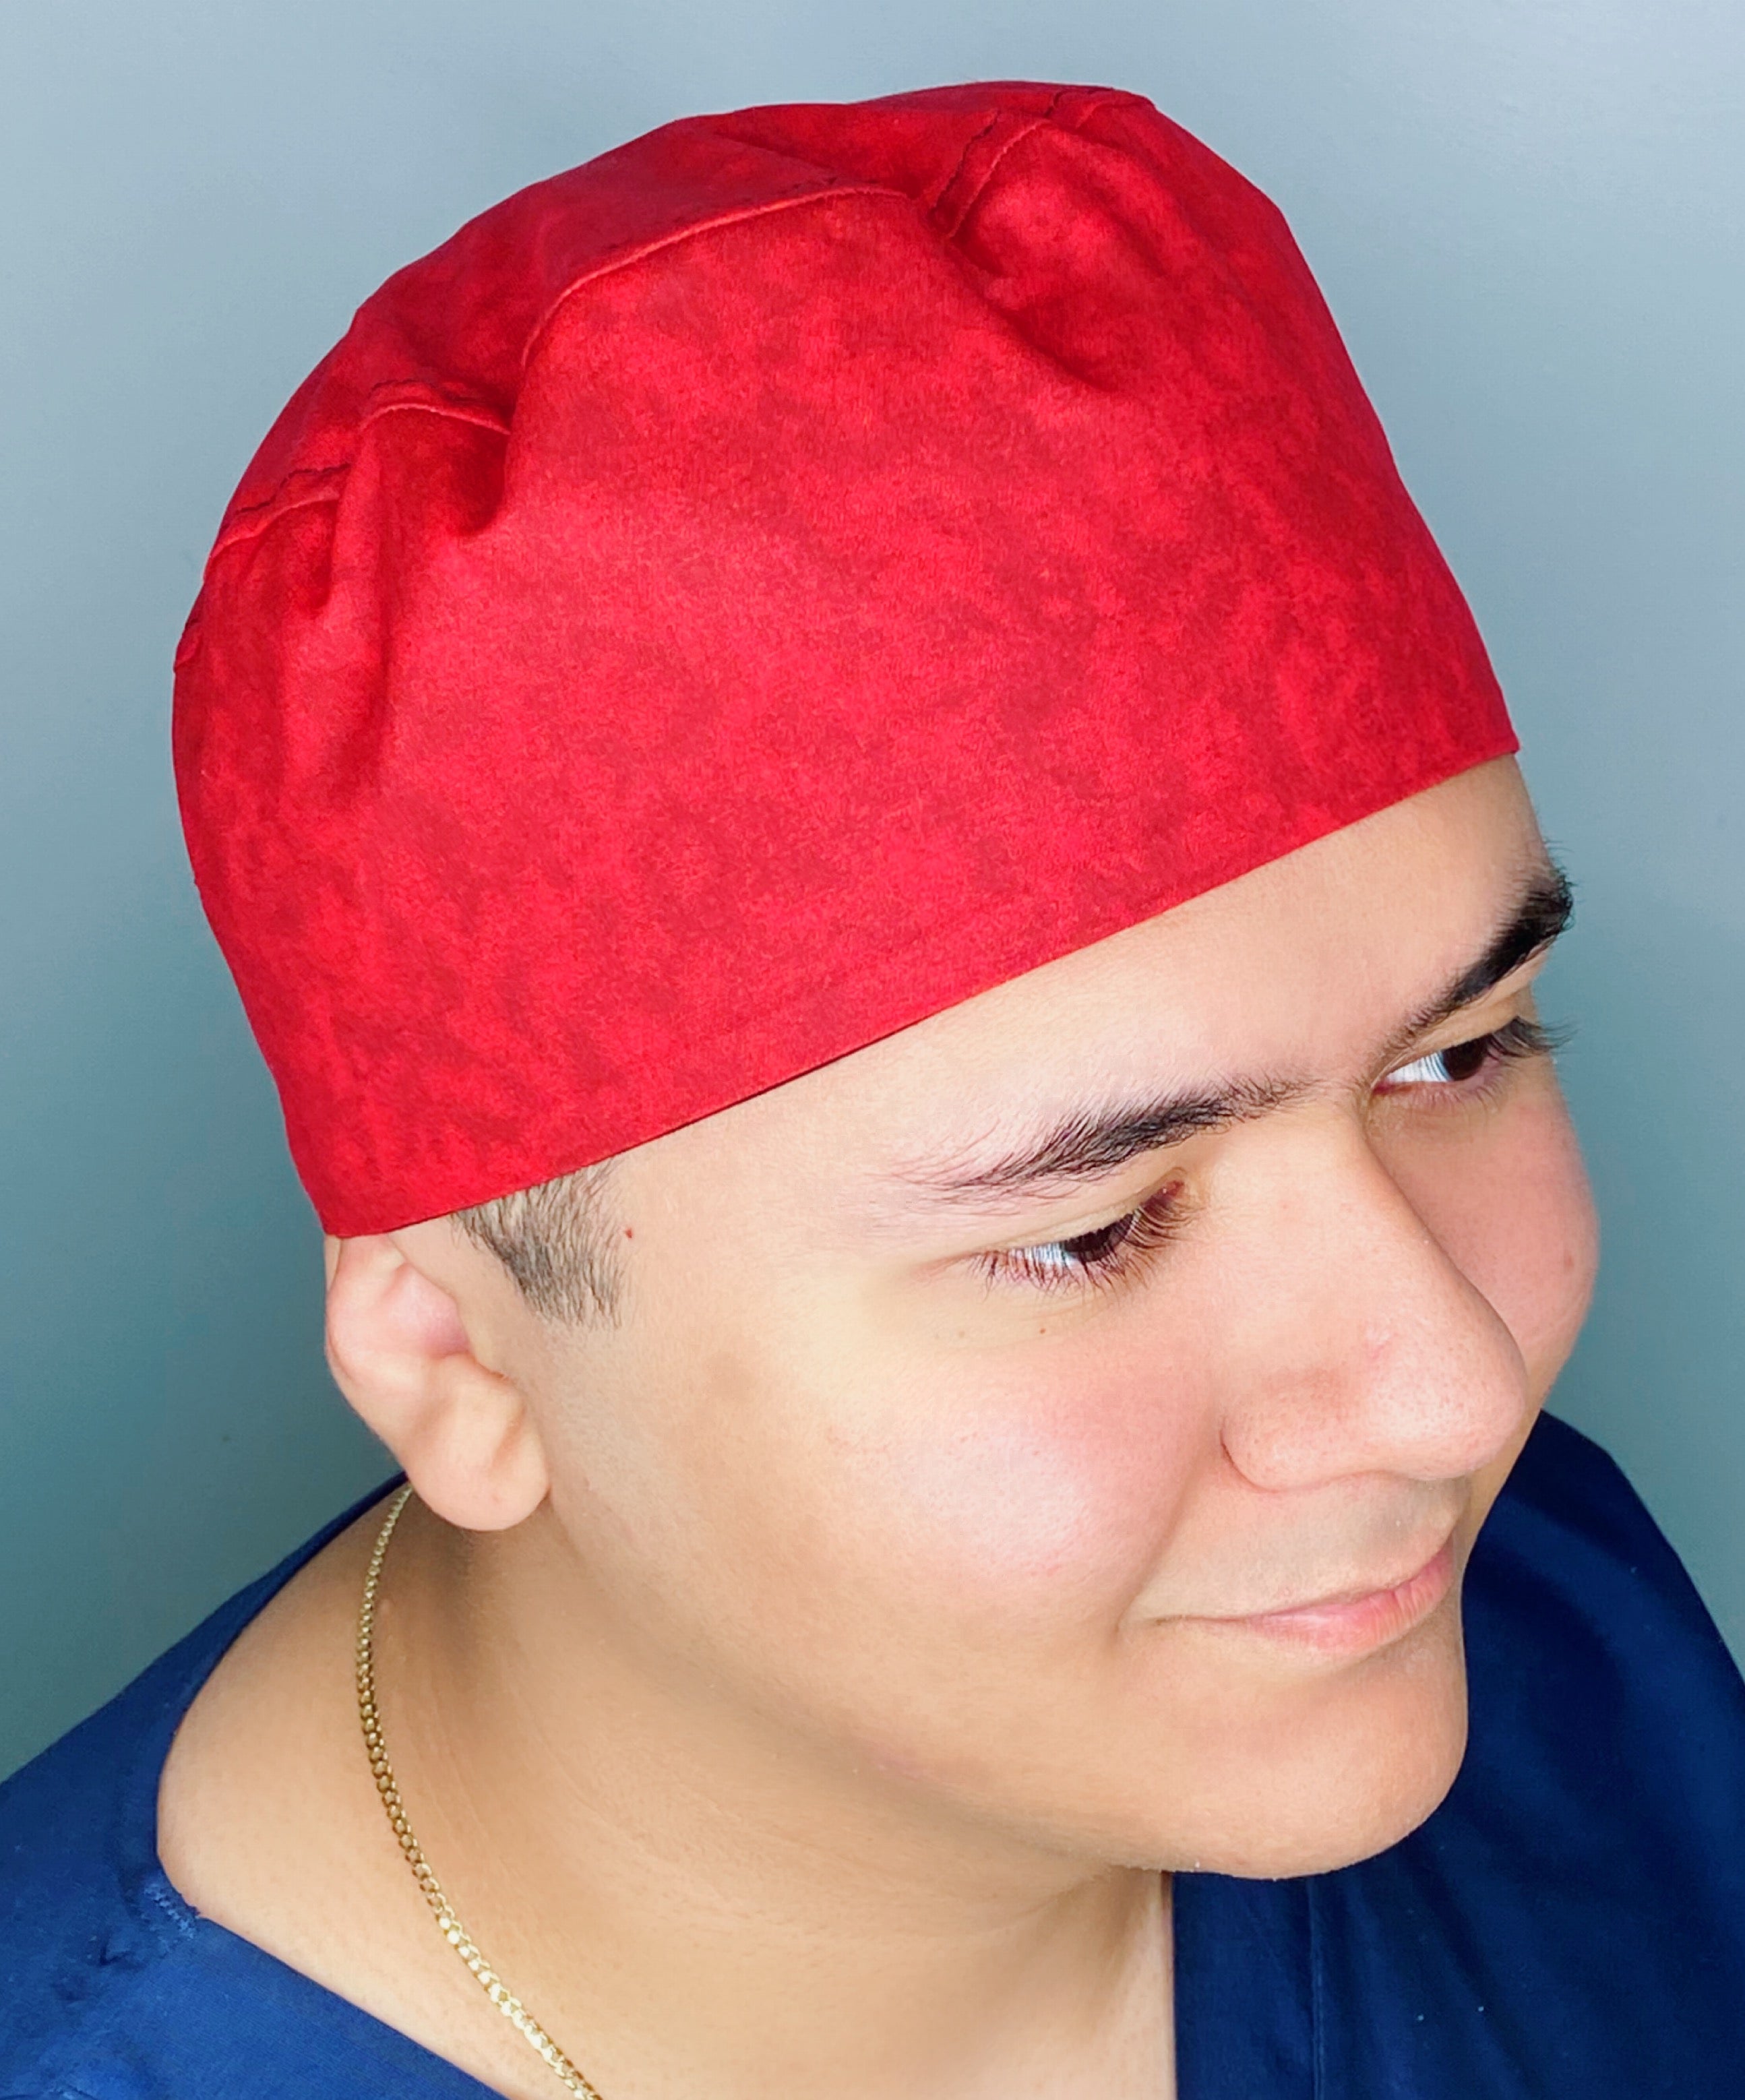 Red Tie Dye Design Unisex Cute Scrub Cap